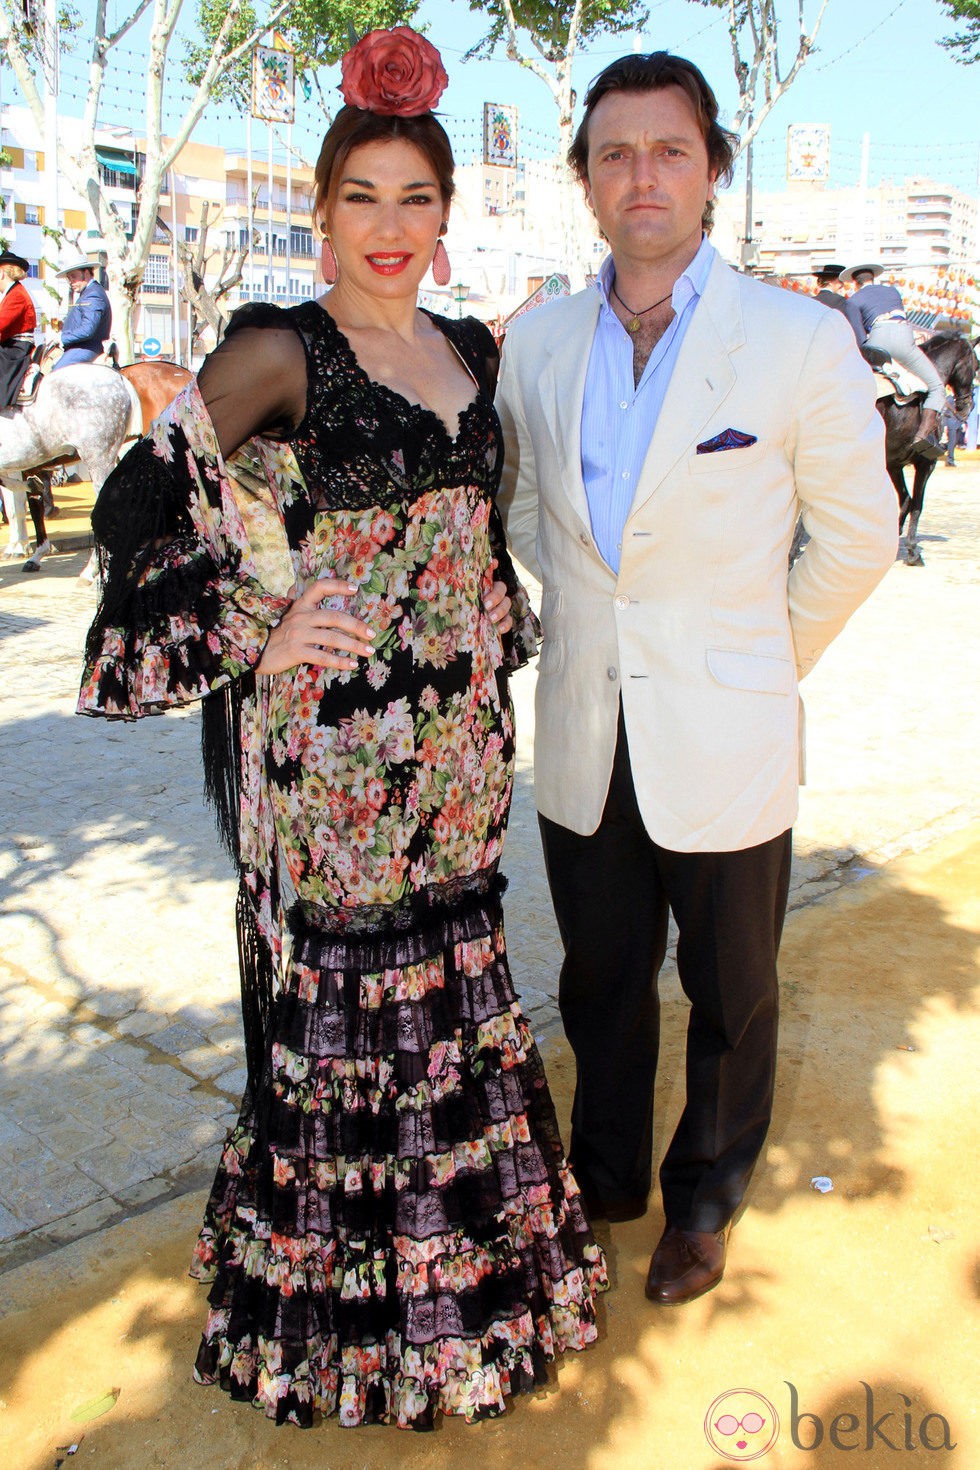 Raquel Revuelta y Raúl Gracia 'El Tato' en la Feria de Abril 2013